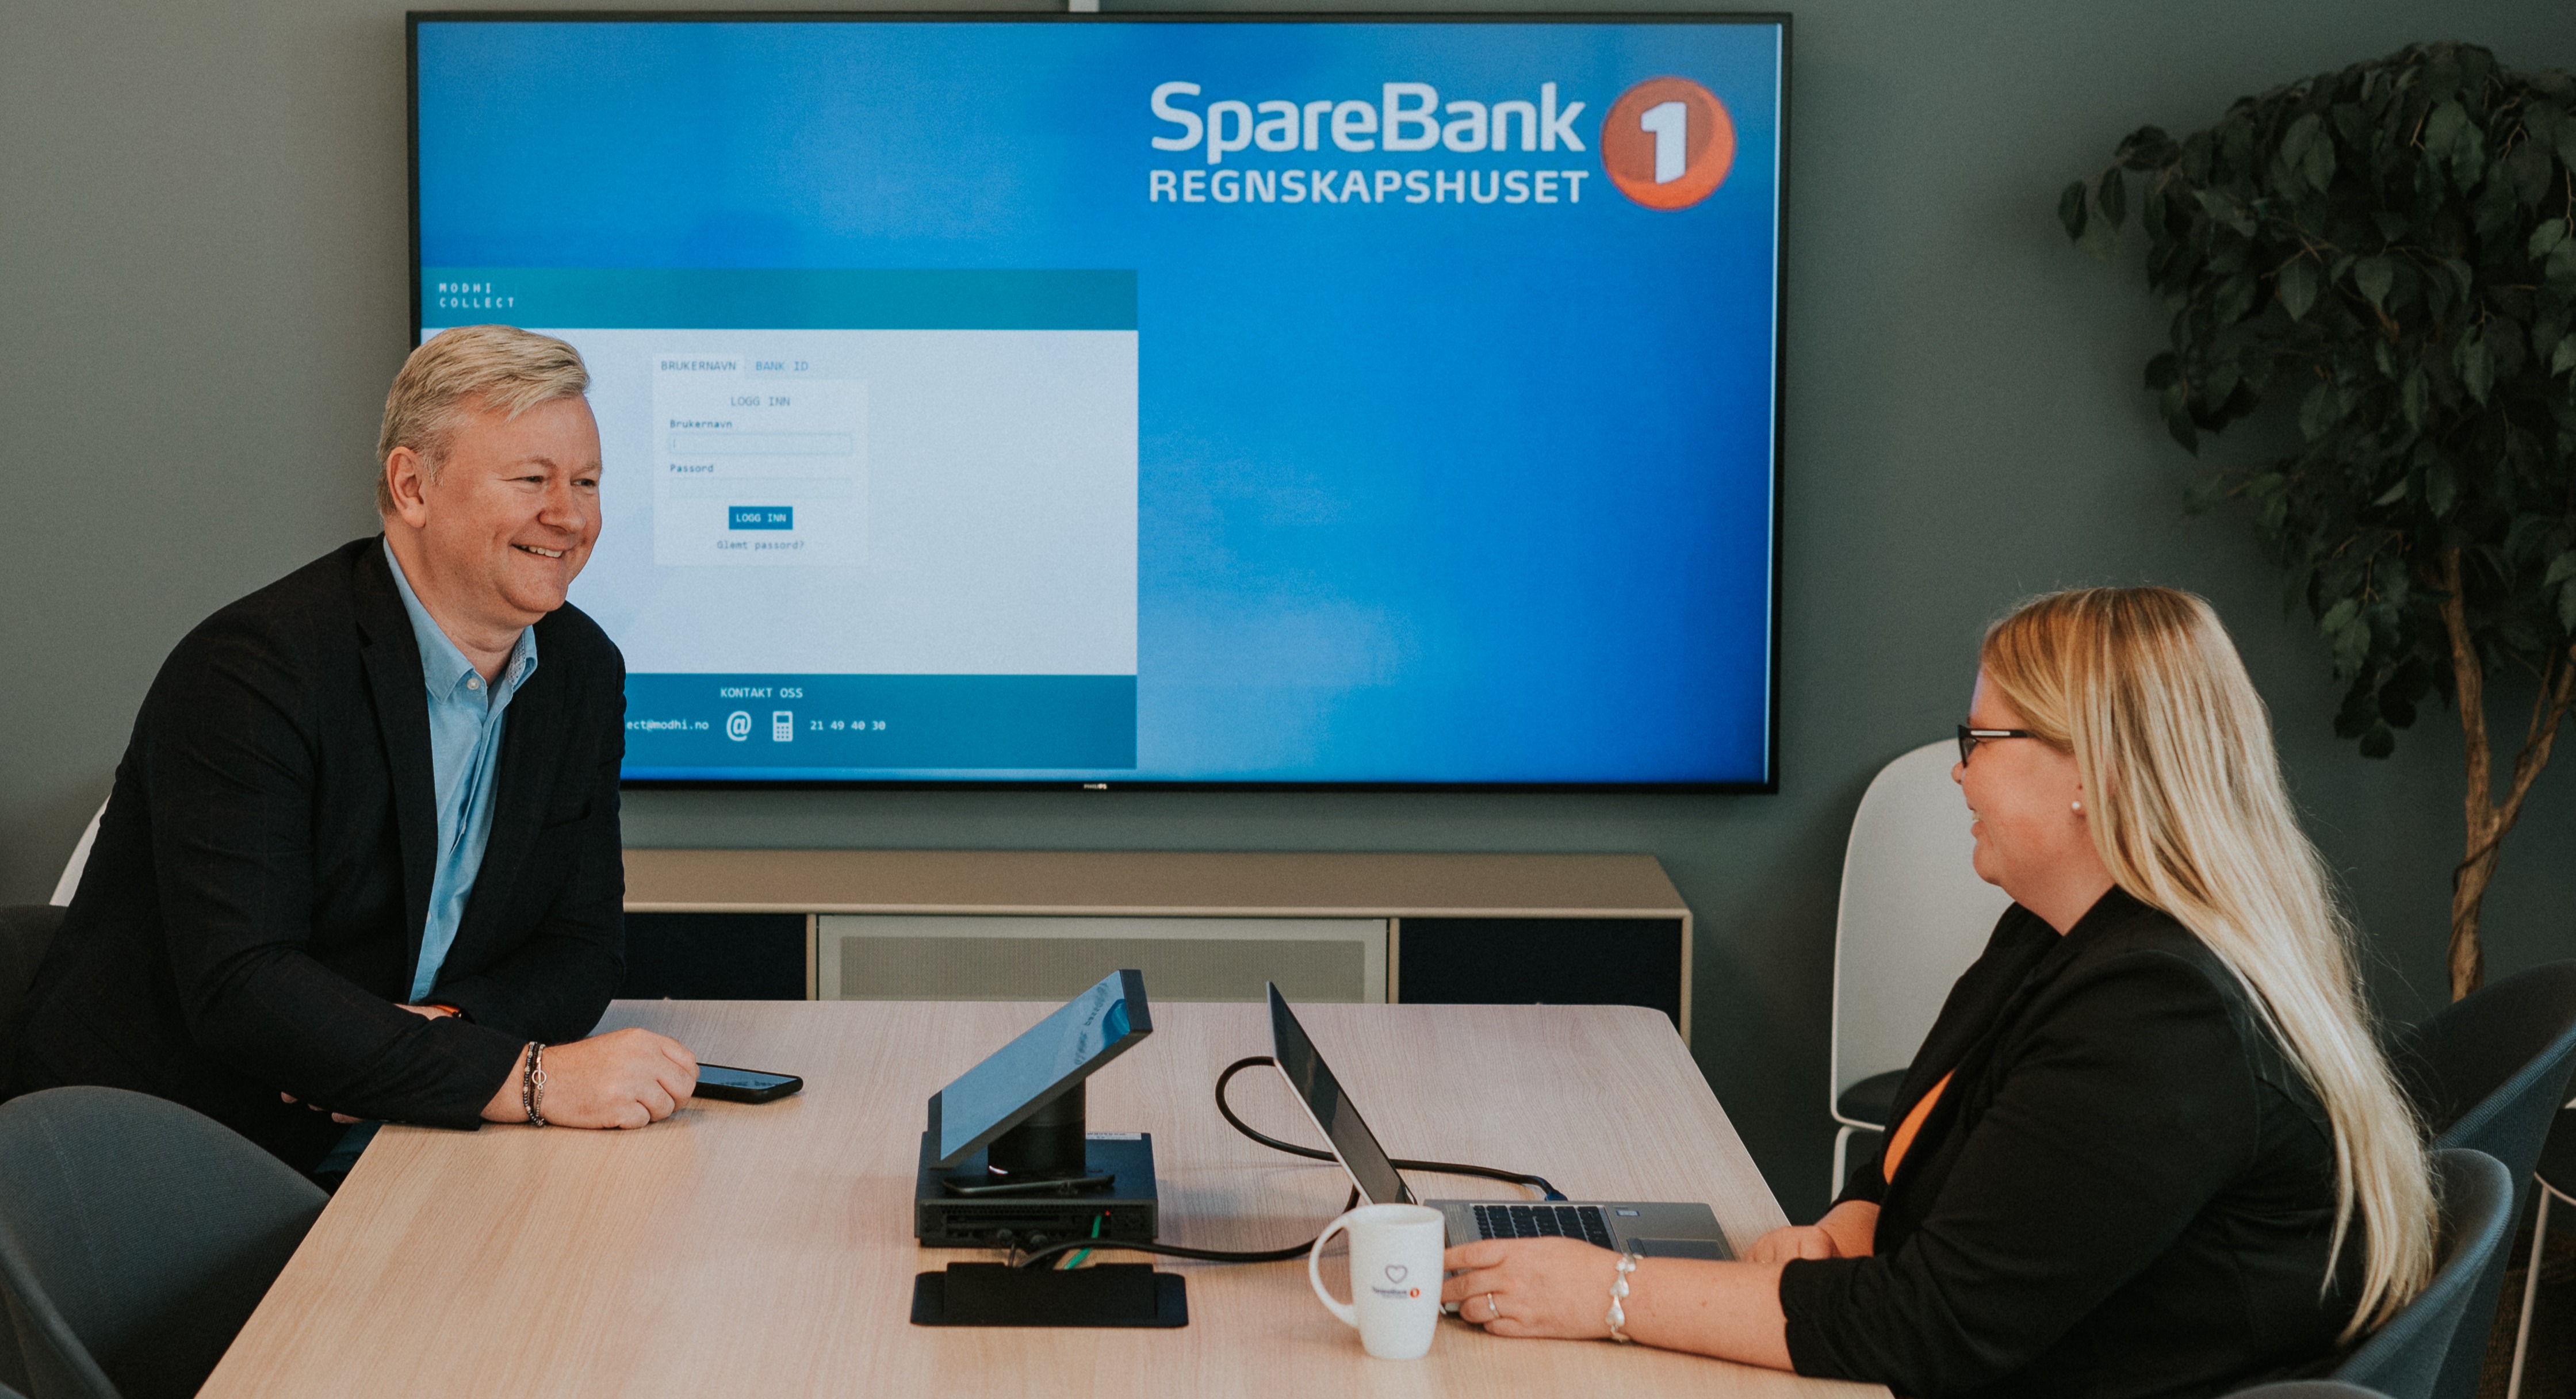 SpareBank1 Regnskapshuset Nord-Norge benytter Modhis integrasjon for inkasso